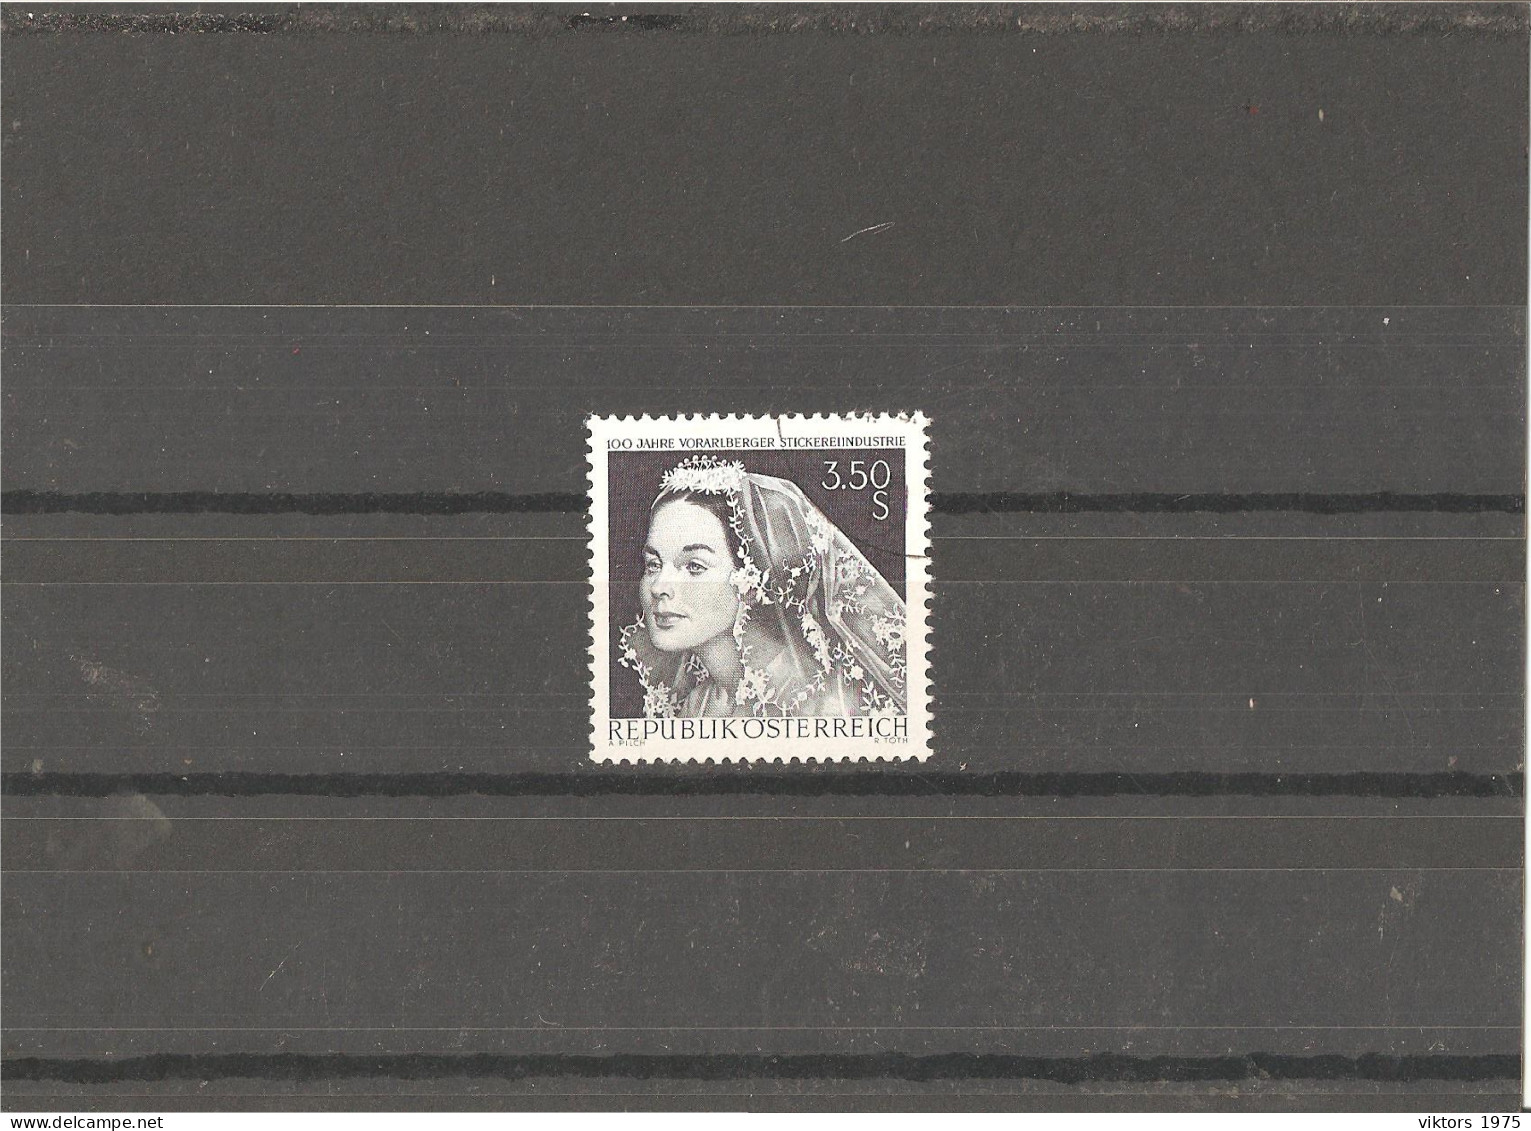 Used Stamp Nr.1261 In MICHEL Catalog - Gebruikt